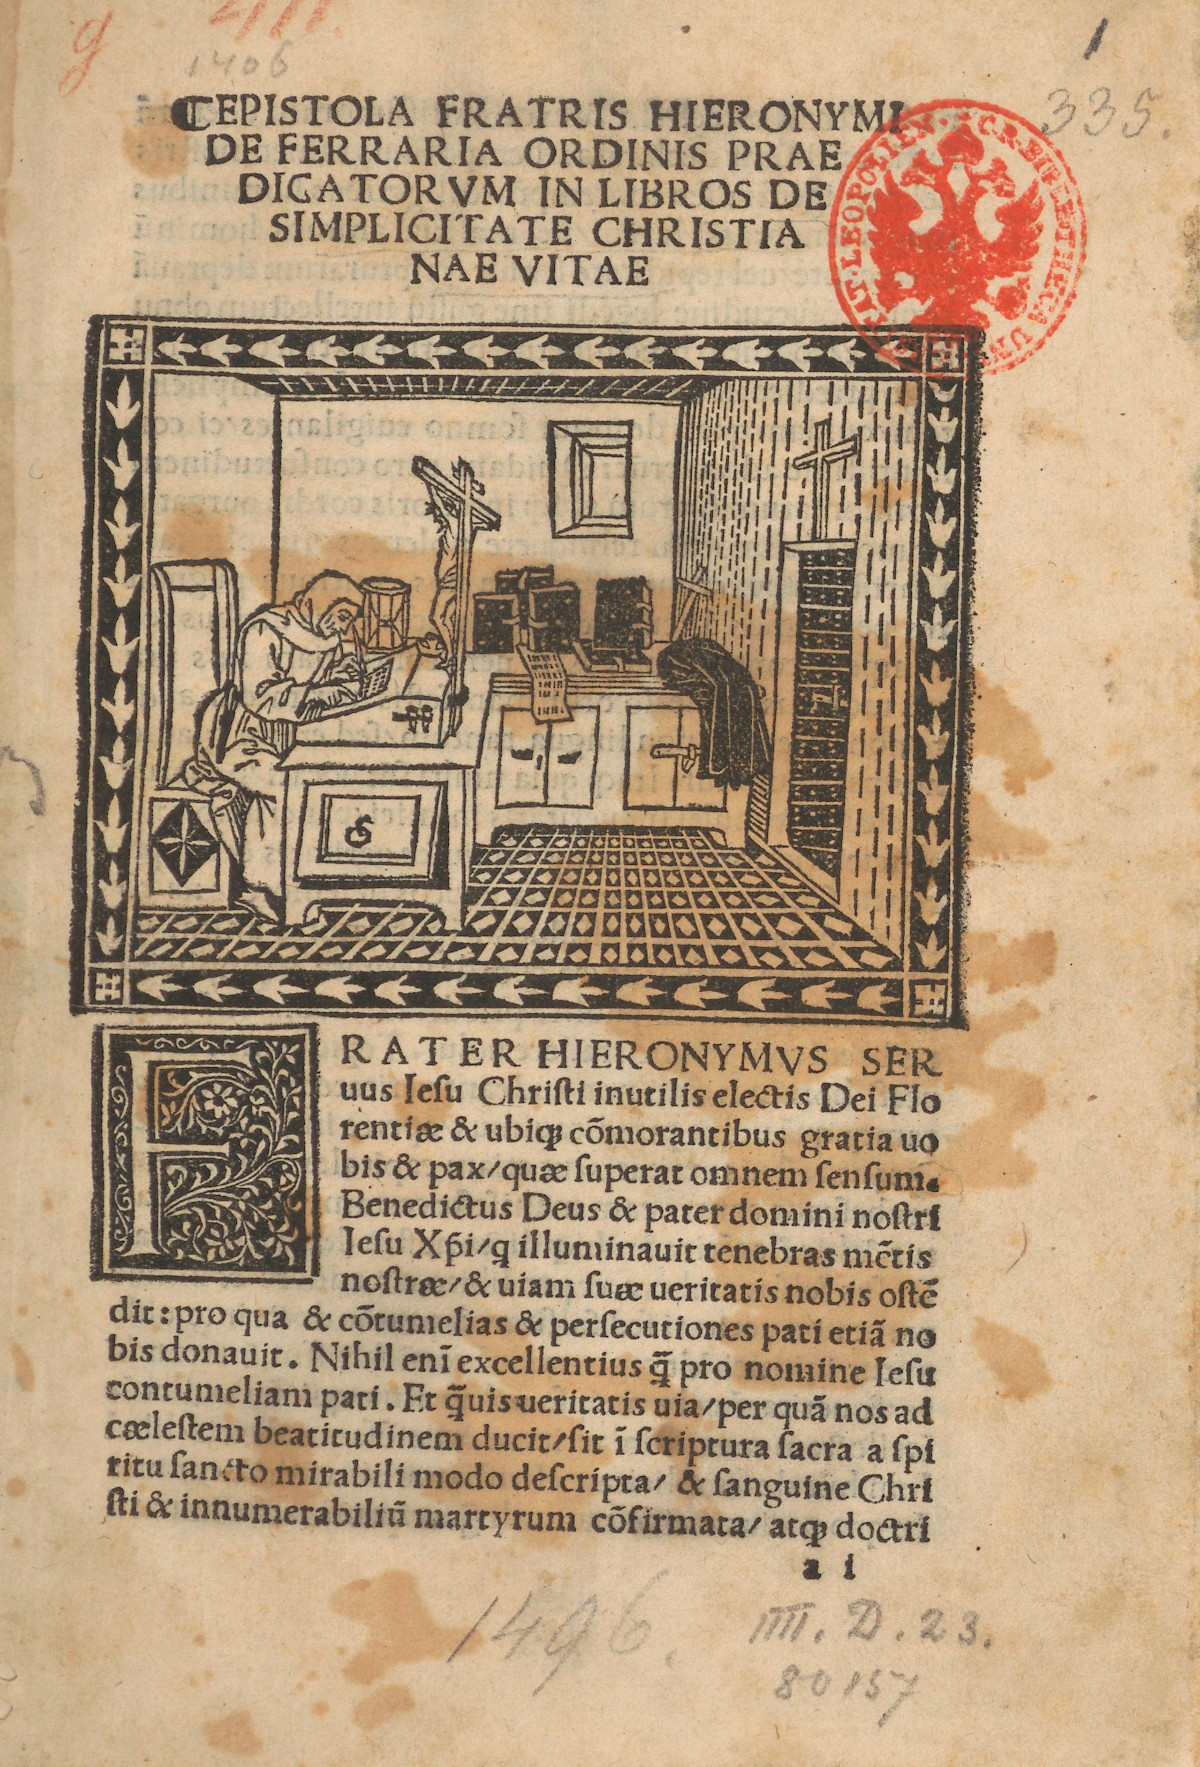 Strona z dzieła Savonaroli pt. "De simplicitate christianae vitae, Florencja, XV w. Fot. Polona/domena publiczna 